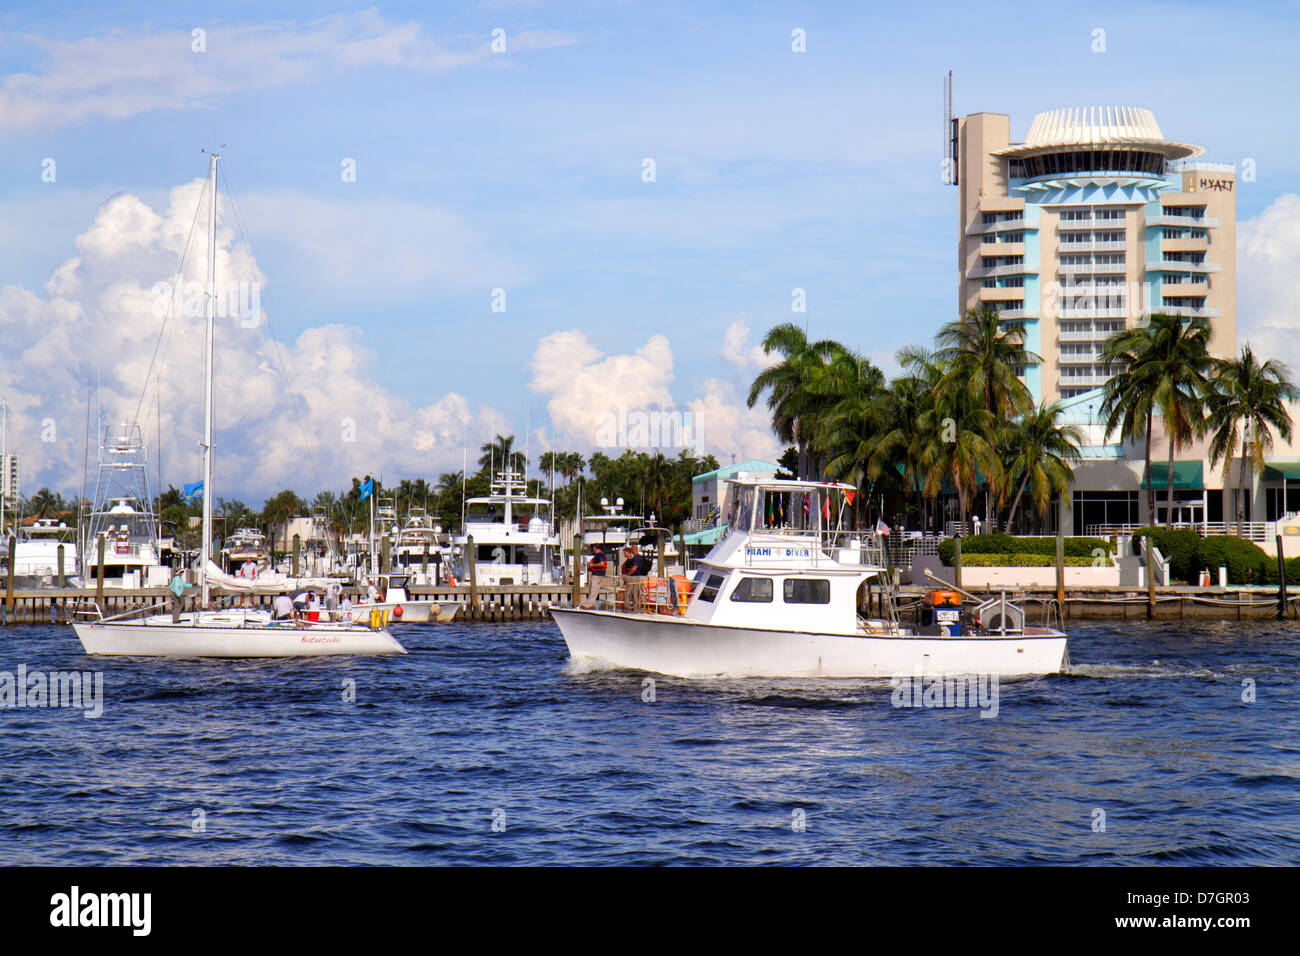 Florida Ft. Fort Lauderdale,Intracoastal Hyatt Regency Pier 66 Resort,hoteles hotel alojamiento inn moteles motel,barco,agua,puerto deportivo,visitantes viajan Foto de stock